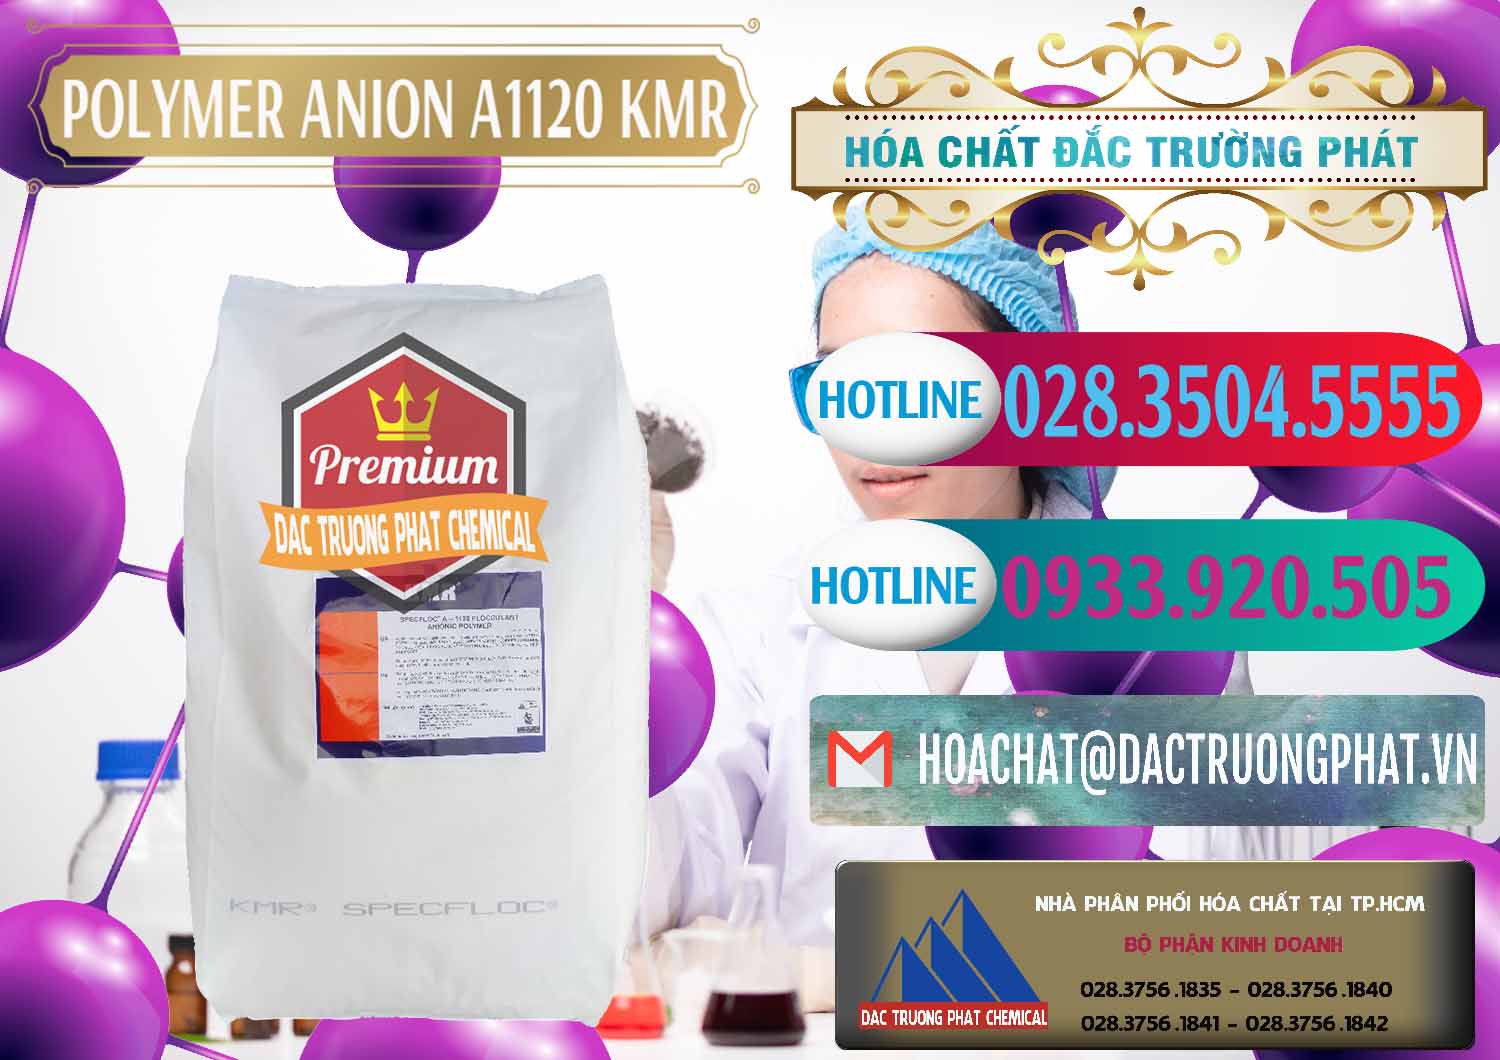 Cty chuyên bán - phân phối Polymer Anion A1120 - KMR Anh Quốc England - 0119 - Đơn vị cung cấp - phân phối hóa chất tại TP.HCM - truongphat.vn